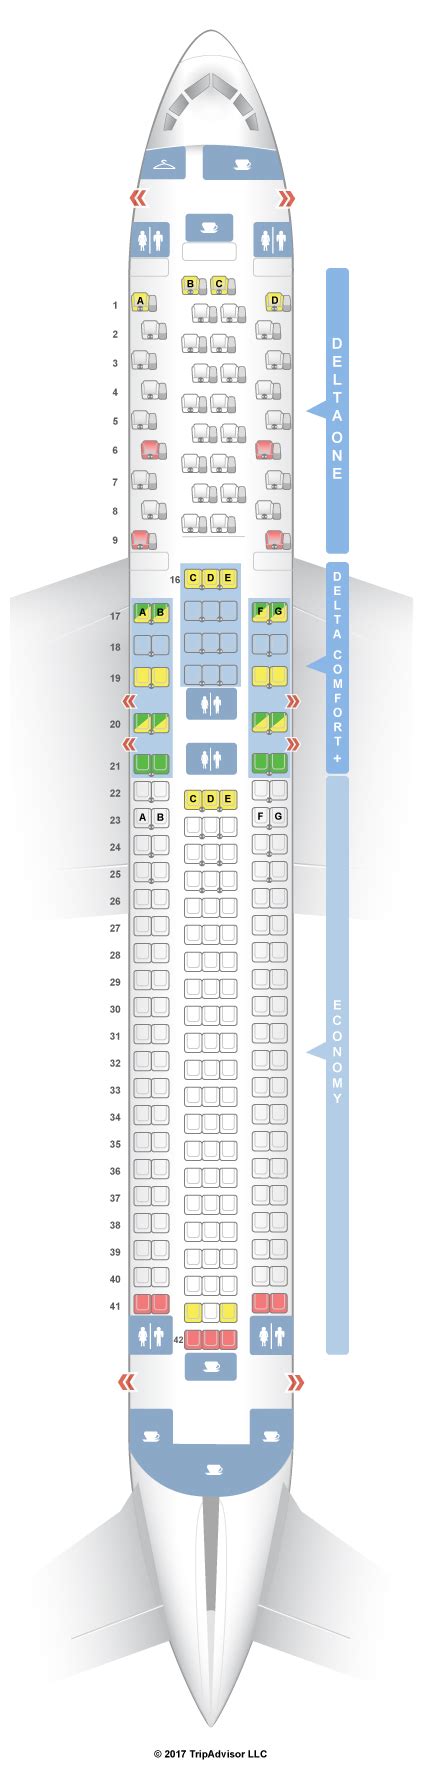 Delta seatguru 767-300. Your guide to Delta seat maps and fleet information, ... Boeing 757-300 (75Y) Boeing 767-300ER (76H/76Z) Layout 3; ... SeatGuru was created to help travelers choose 